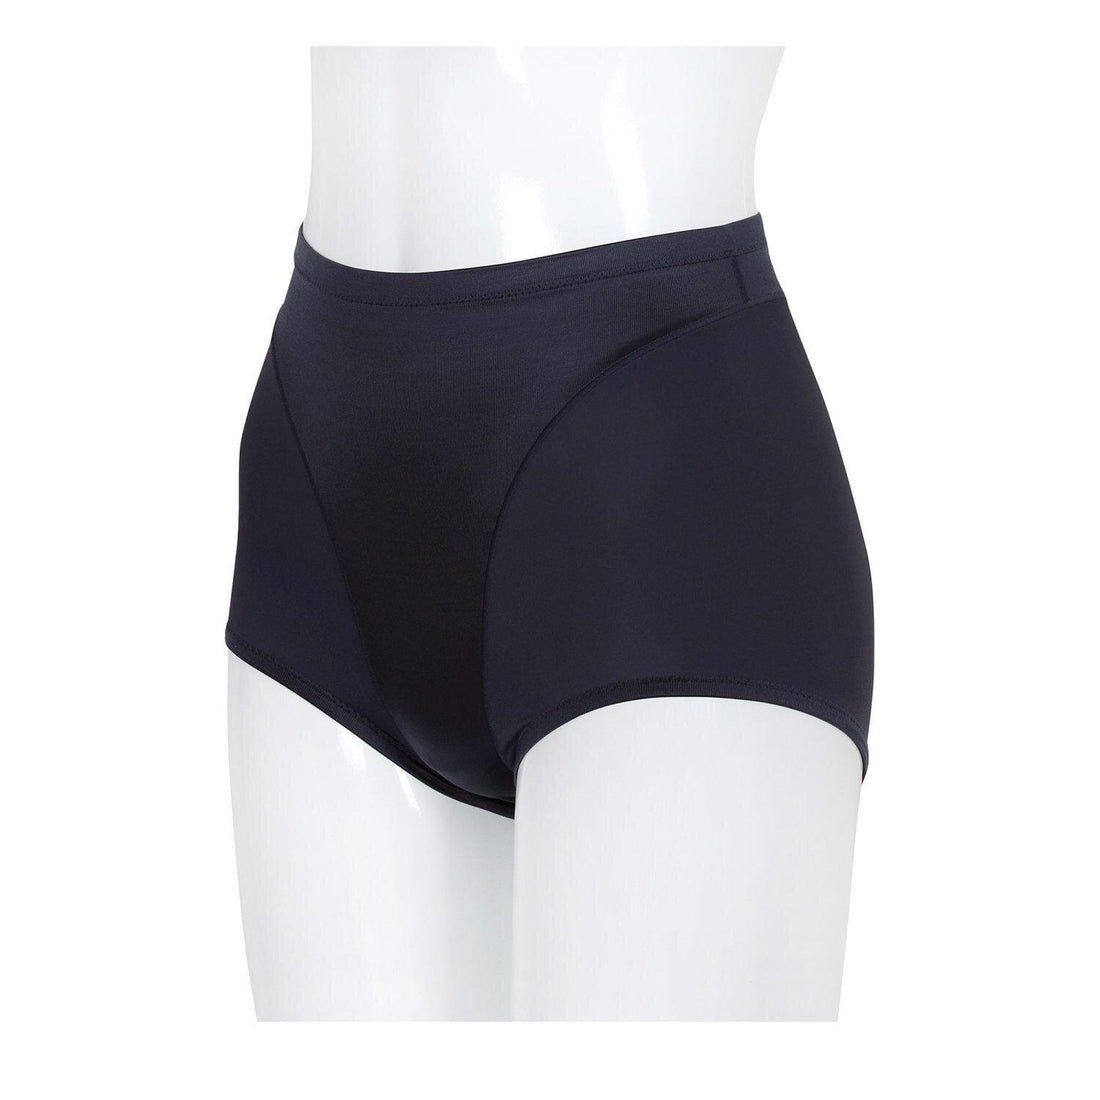 Wacoal Shapewear Hips Tummy Control Panties Model WY1128 Beige (BE